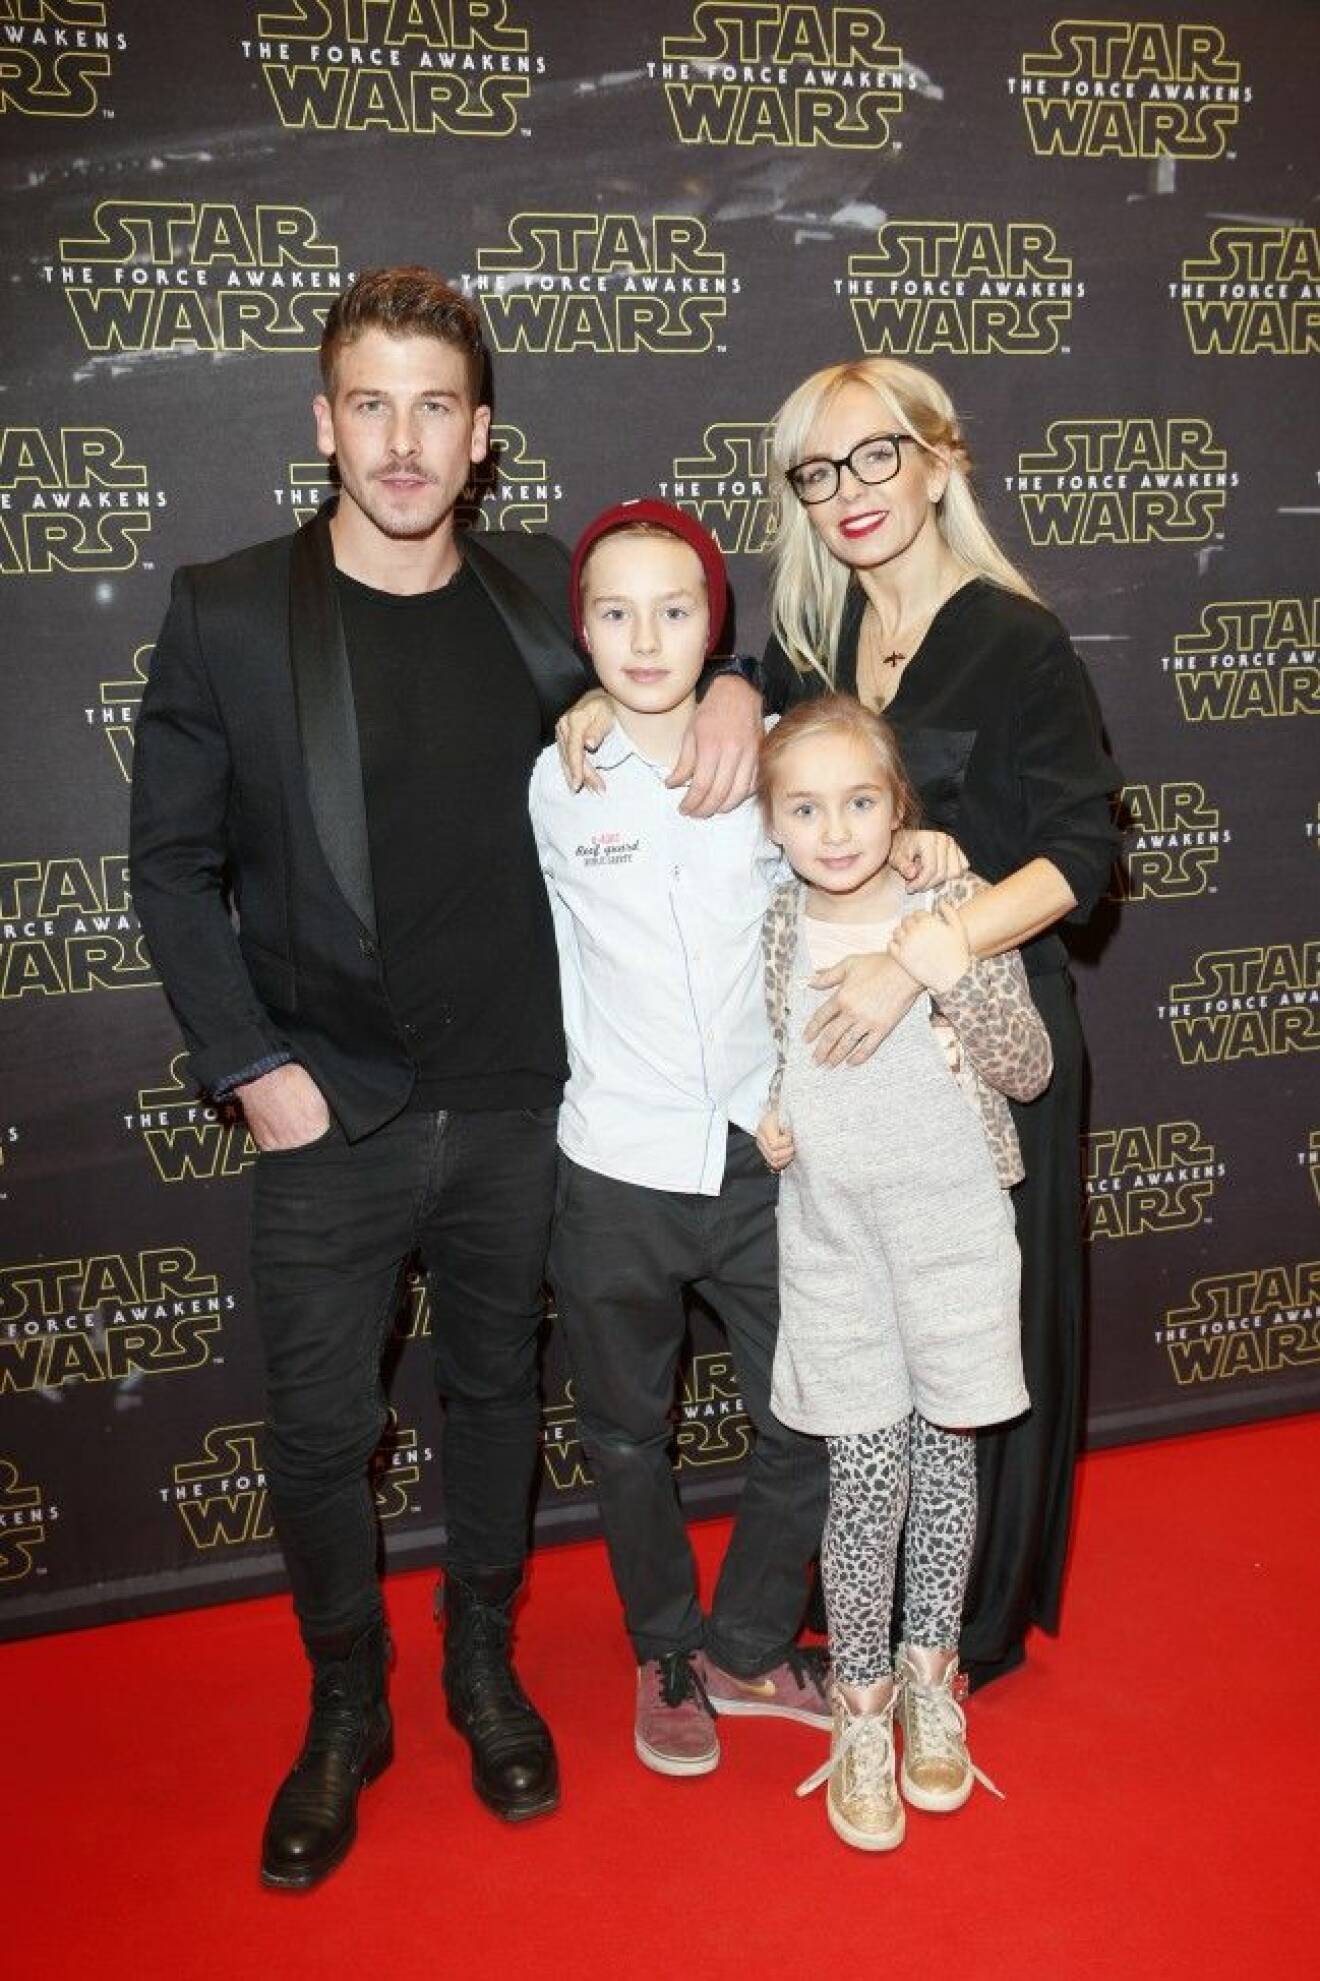 Star Wars Musikalaktuella Kenny Solomon med lika Alcazar-aktuella sambon Tess Merkel och hennes barn Neo och Minya